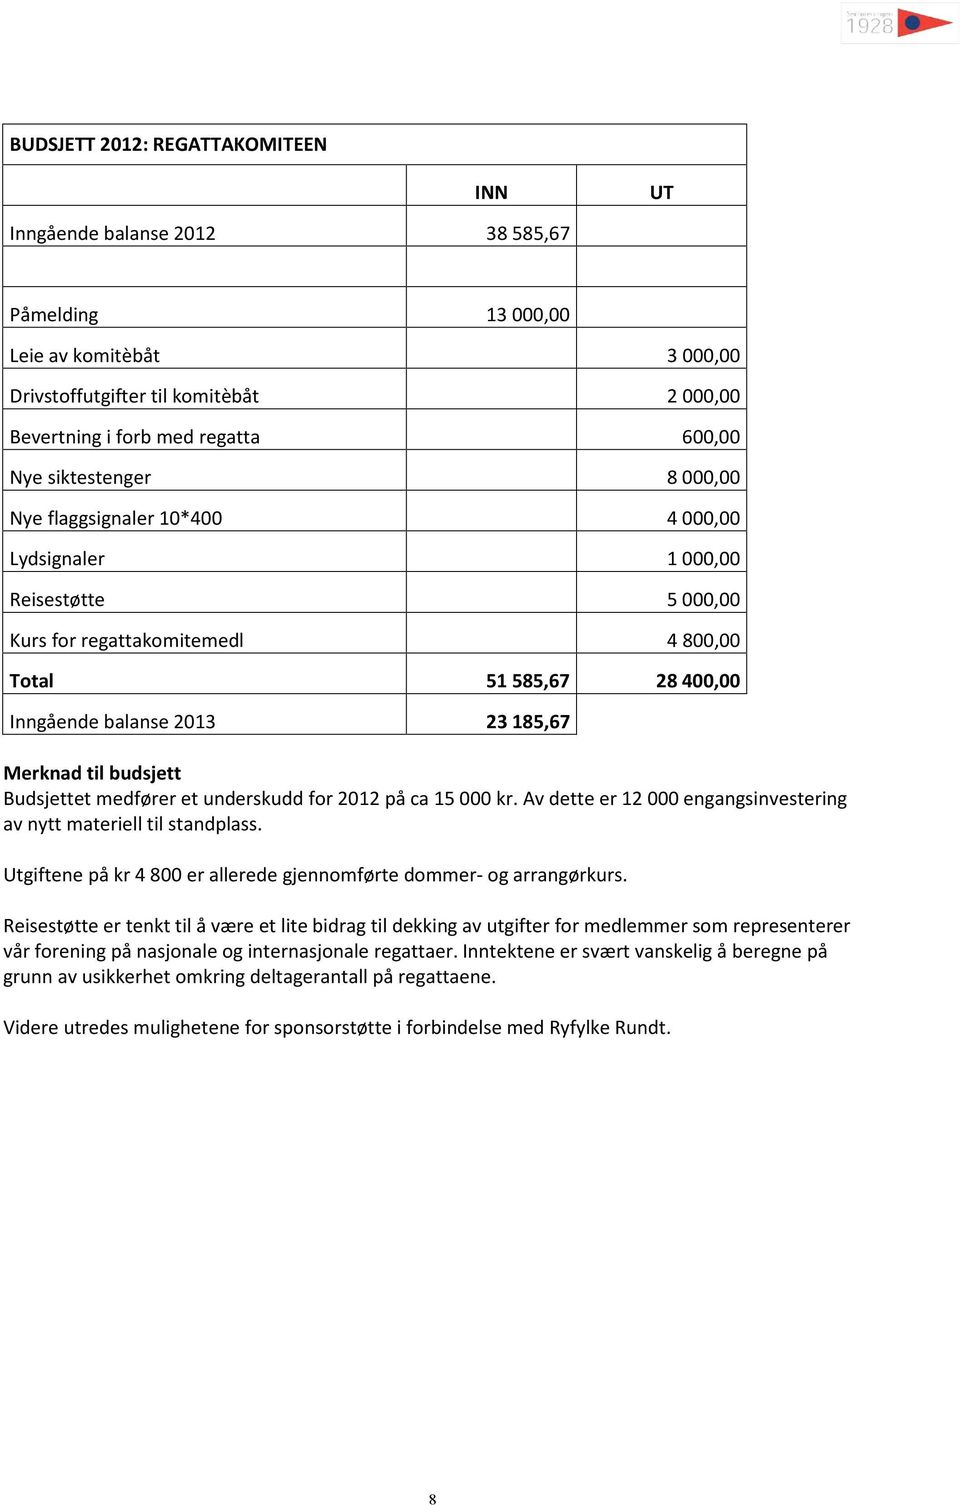 Merknad til budsjett Budsjettet medfører et underskudd for 2012 på ca 15 000 kr. Av dette er 12 000 engangsinvestering av nytt materiell til standplass.